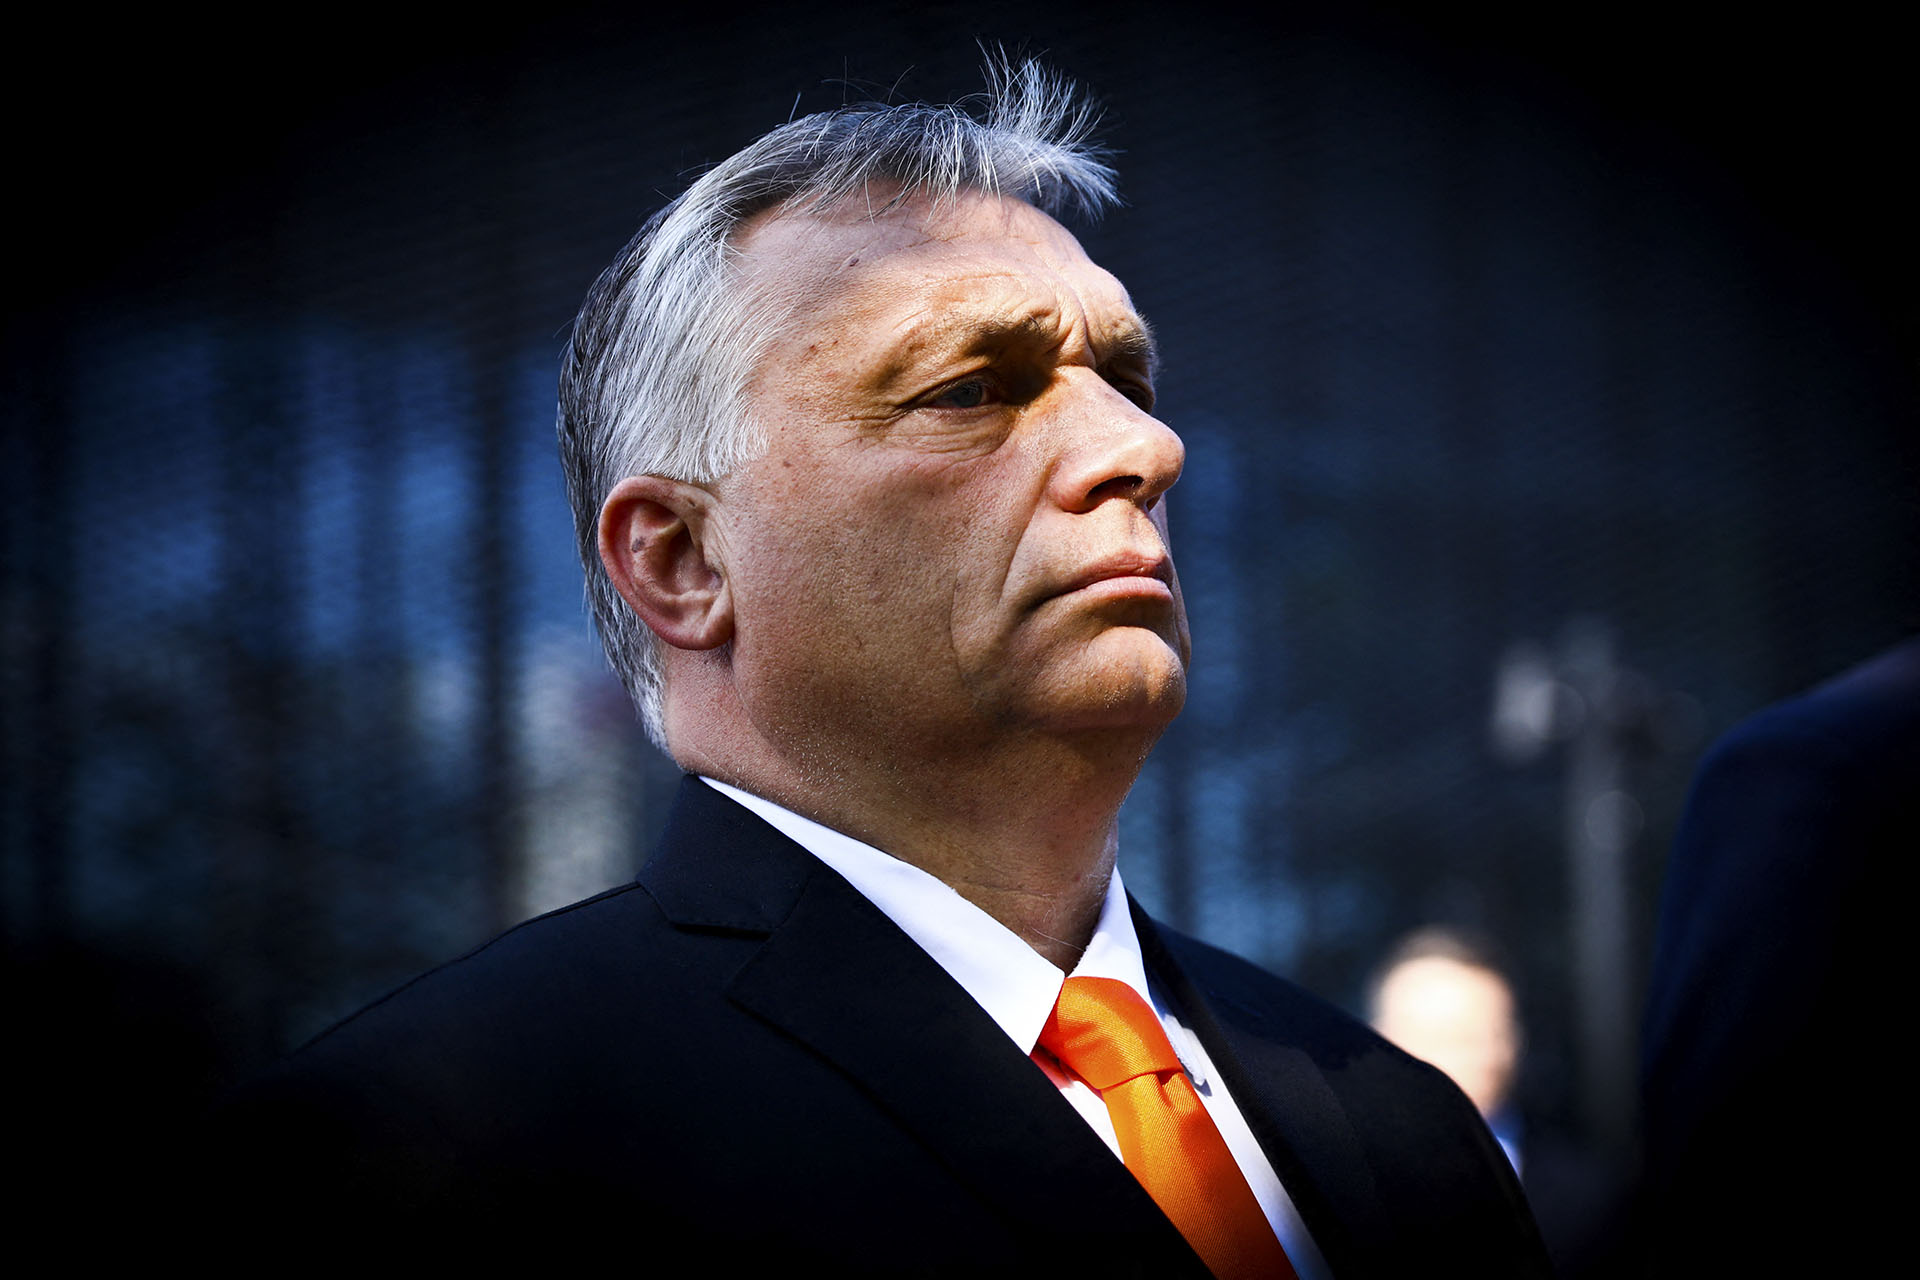 Riporterek Határok Nélkül: Orbán Viktor az egyetlen uniós vezető, aki veszélyezteti a sajtószabadságot